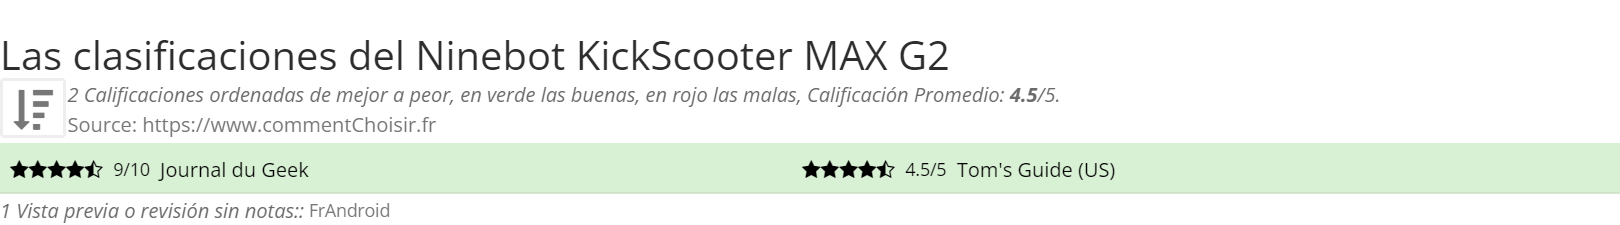 Ratings Ninebot KickScooter MAX G2